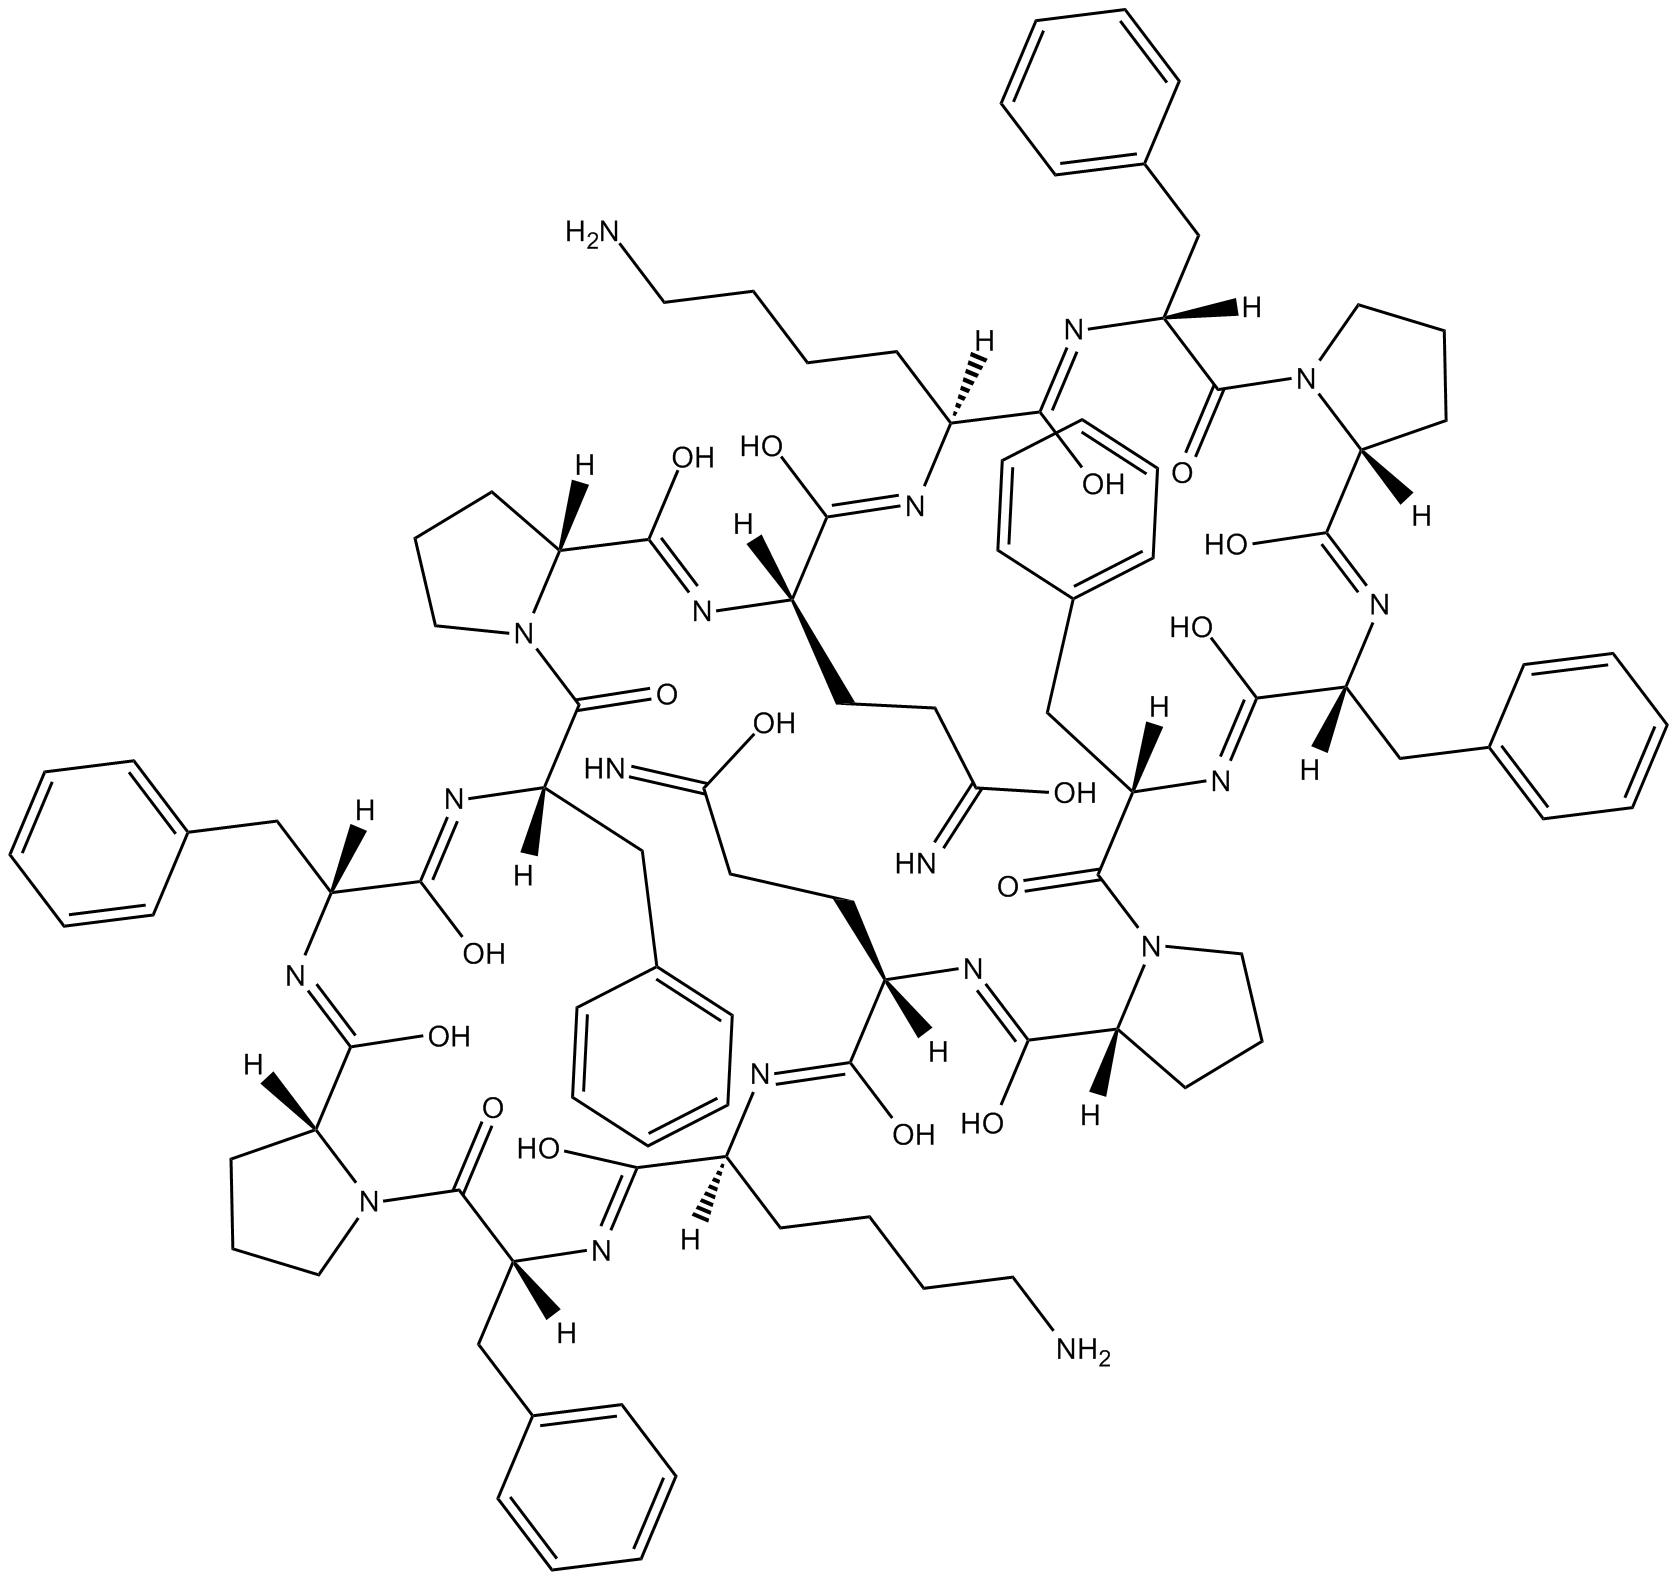 187-1, N-WASP inhibitor Chemische Struktur